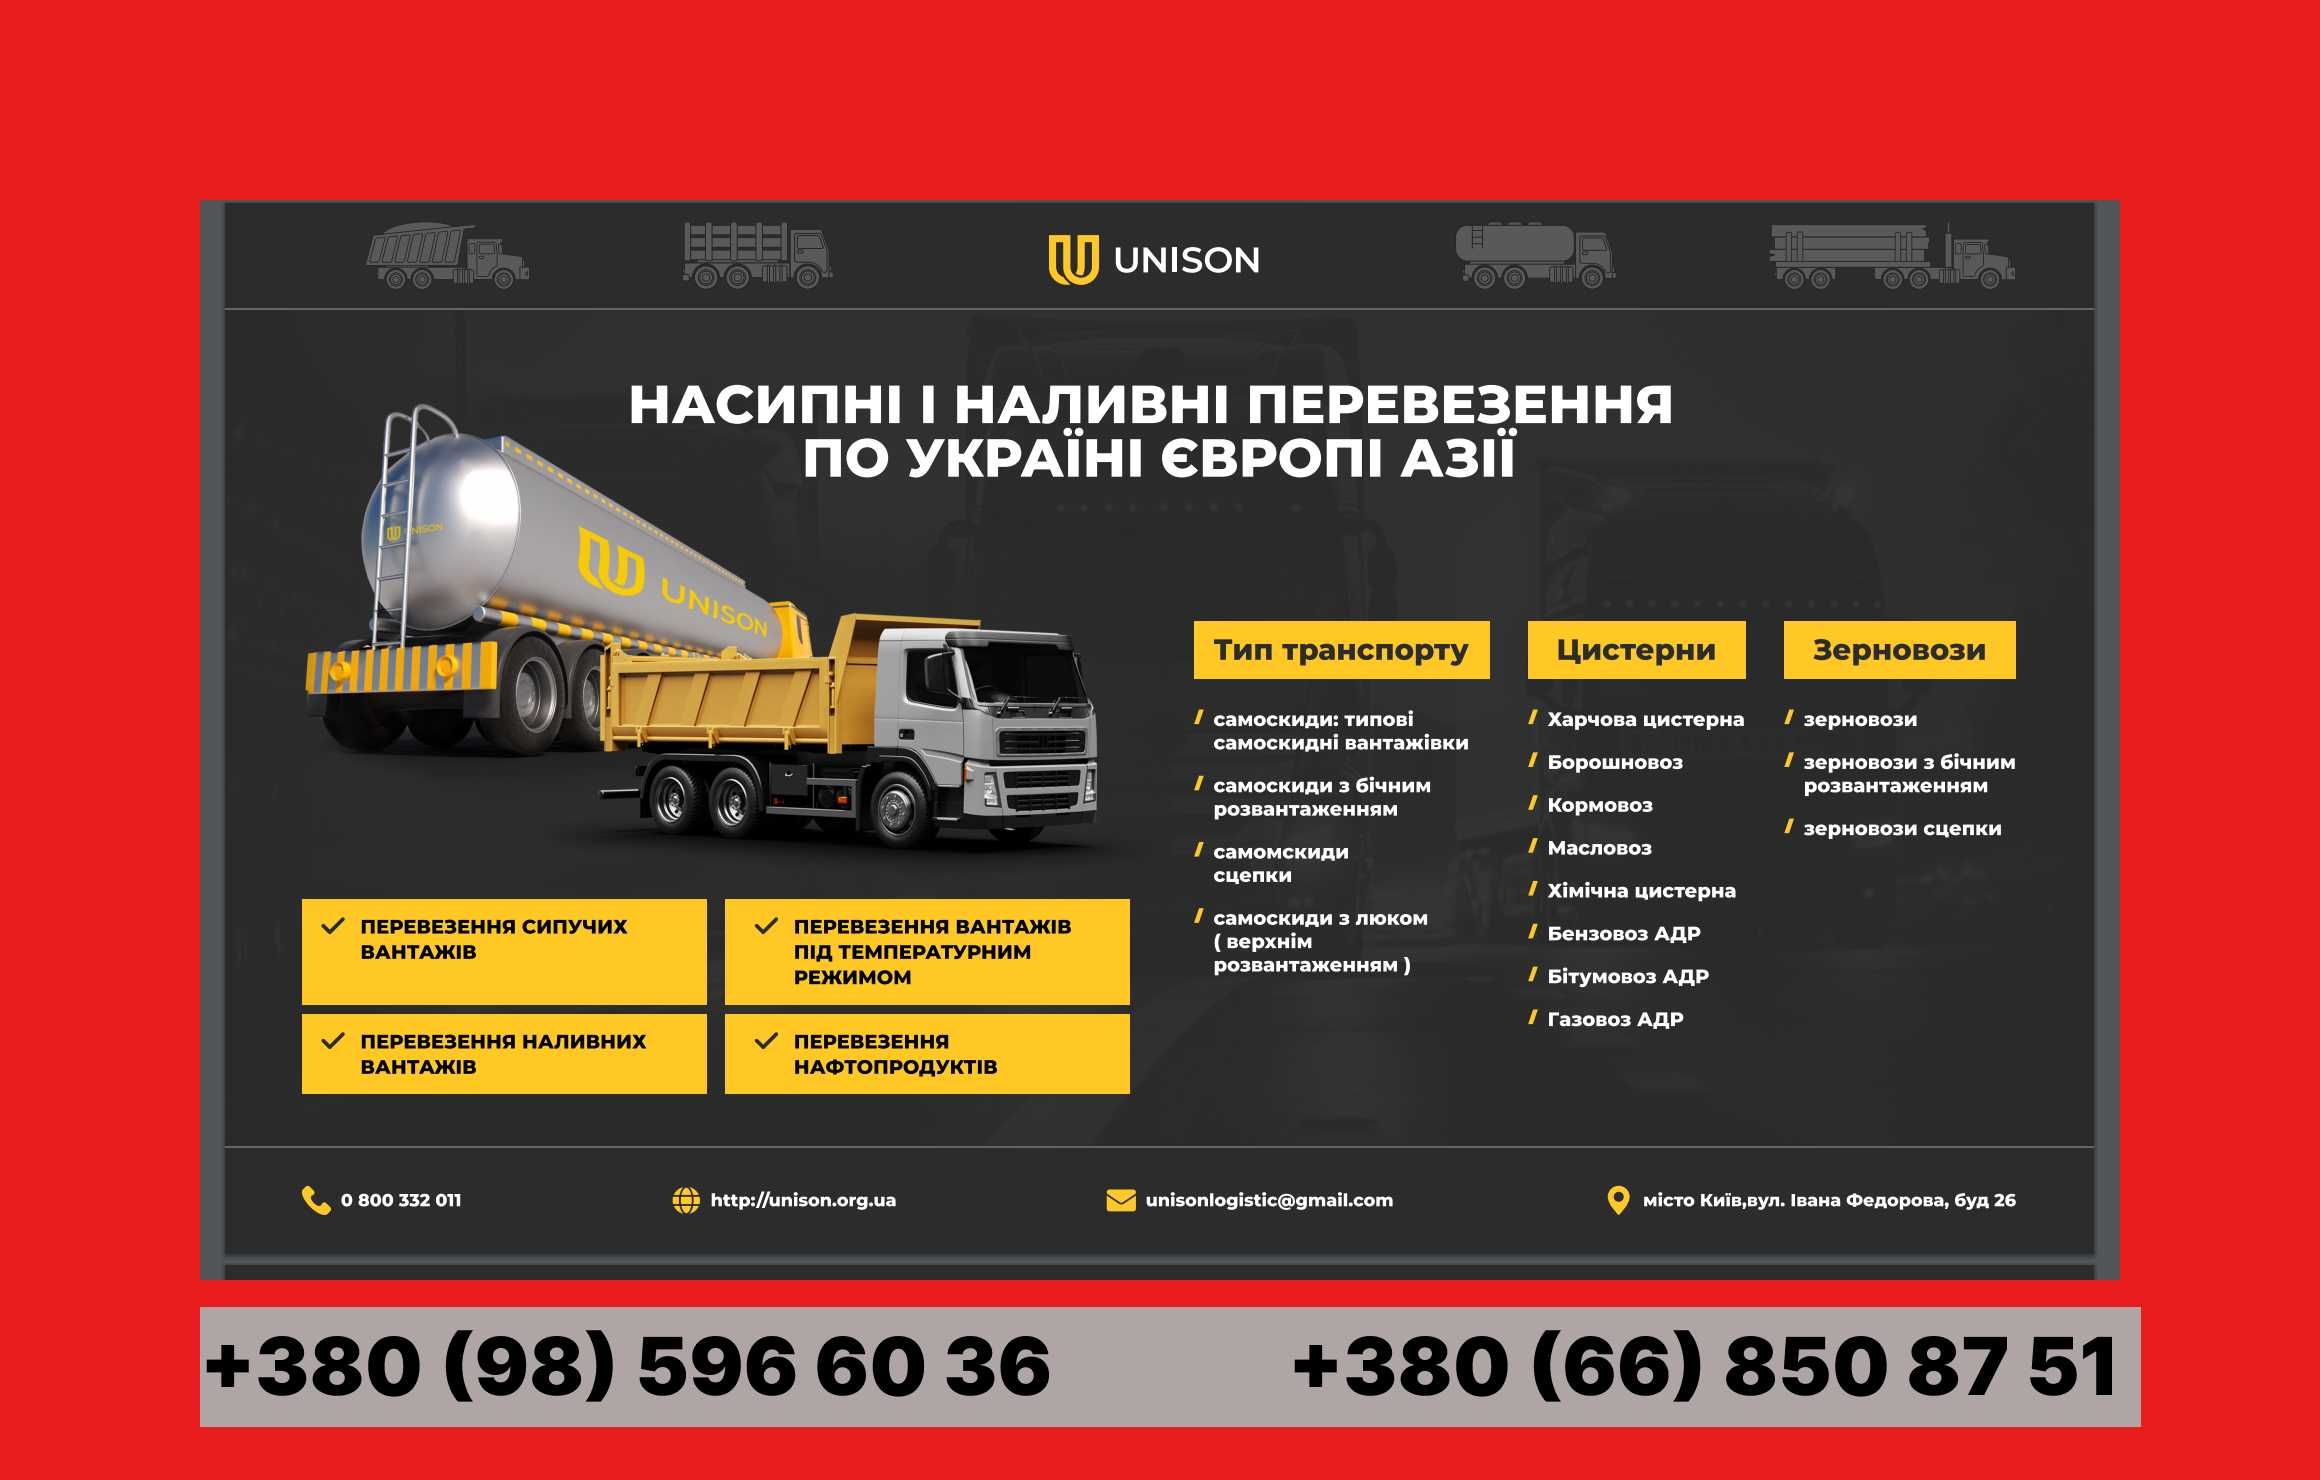 Перевезти груз Грузоперевозки 1-22 тонн Доставка под ключ по Украине